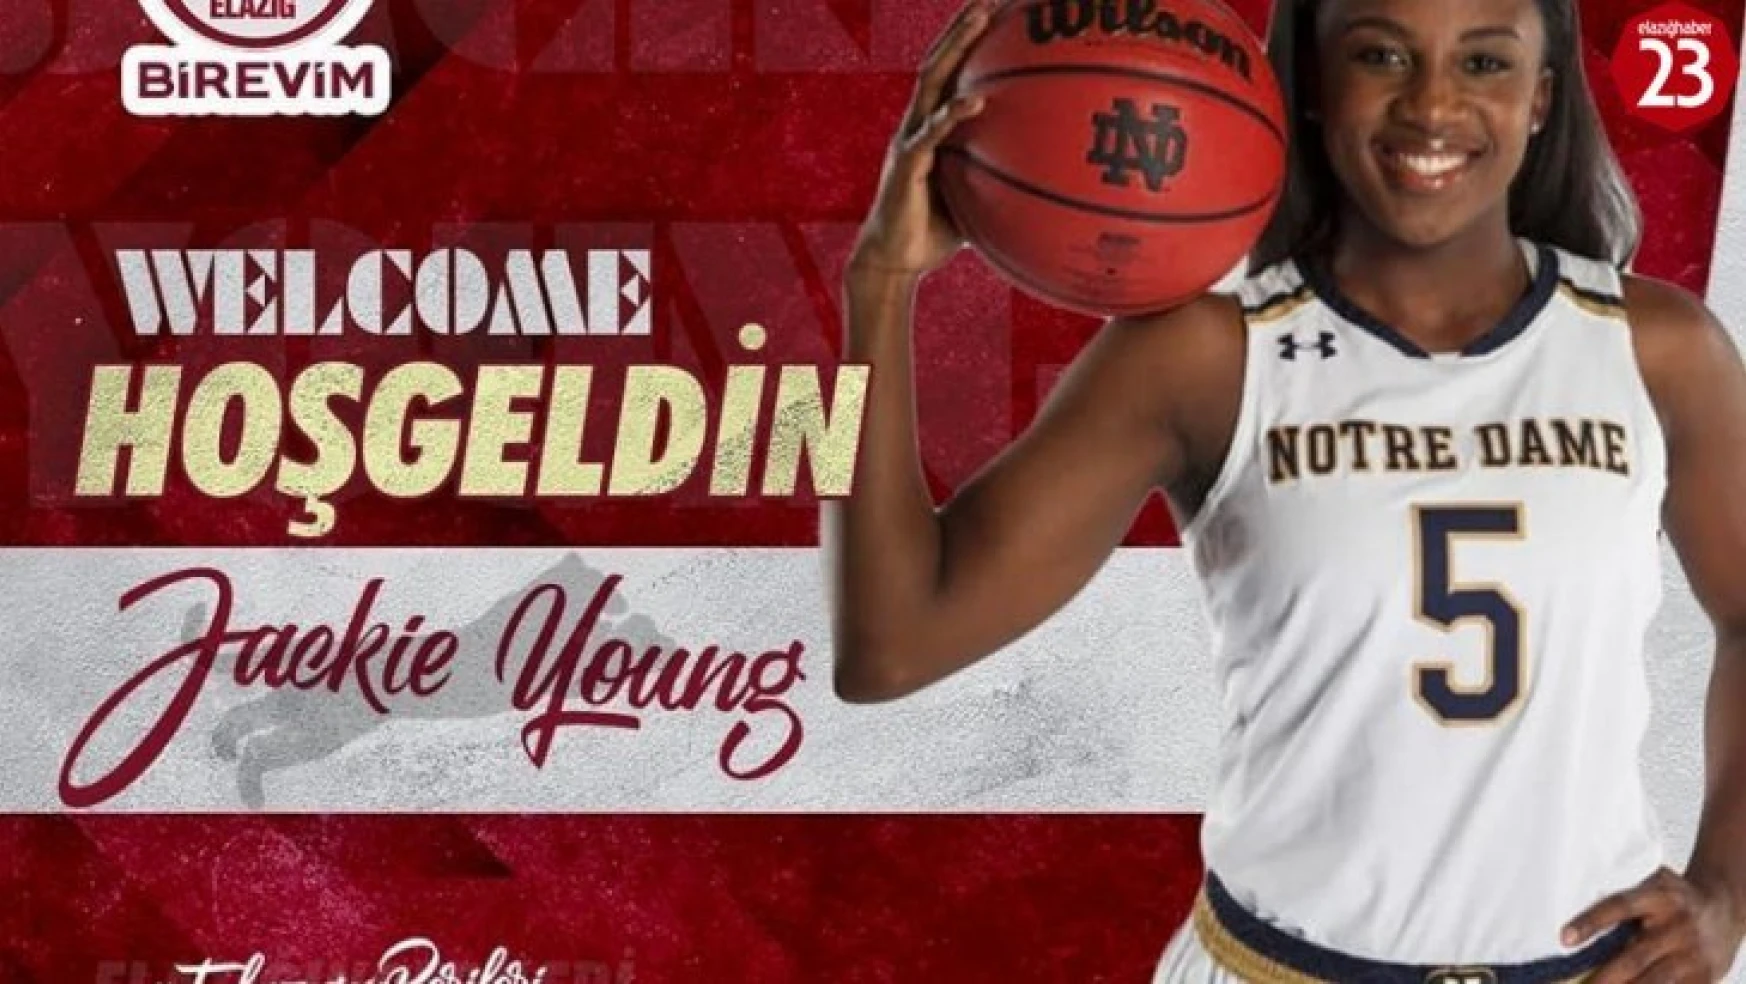 Elazığ İl Özel İdare Kadın Basketbol Takımı, Jackie Young'u transfer etti